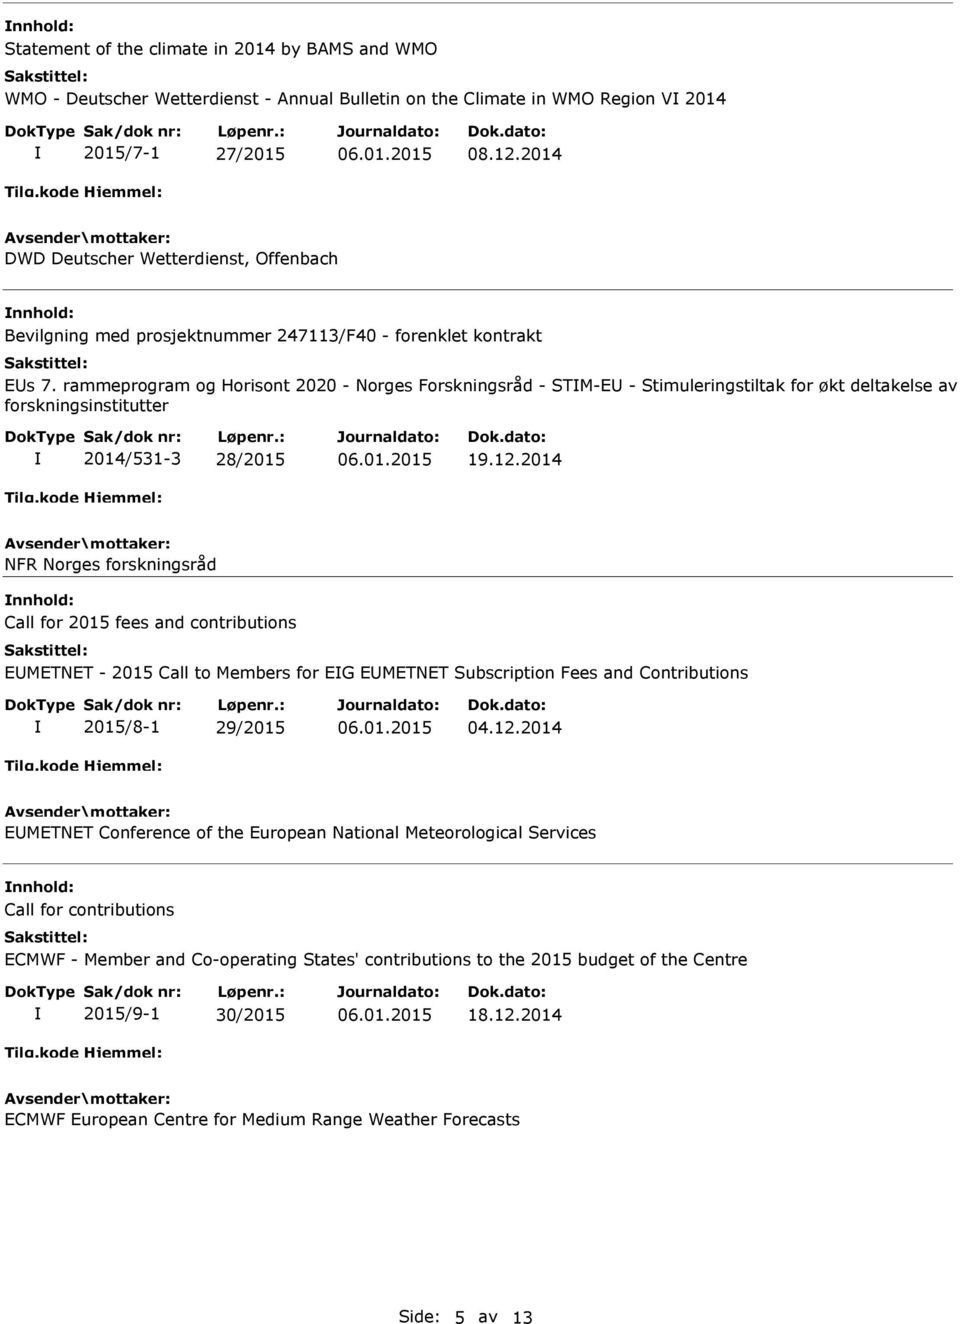 rammeprogram og Horisont 2020 - Norges Forskningsråd - STM-E - Stimuleringstiltak for økt deltakelse av forskningsinstitutter 2014/531-3 28/2015 19.12.